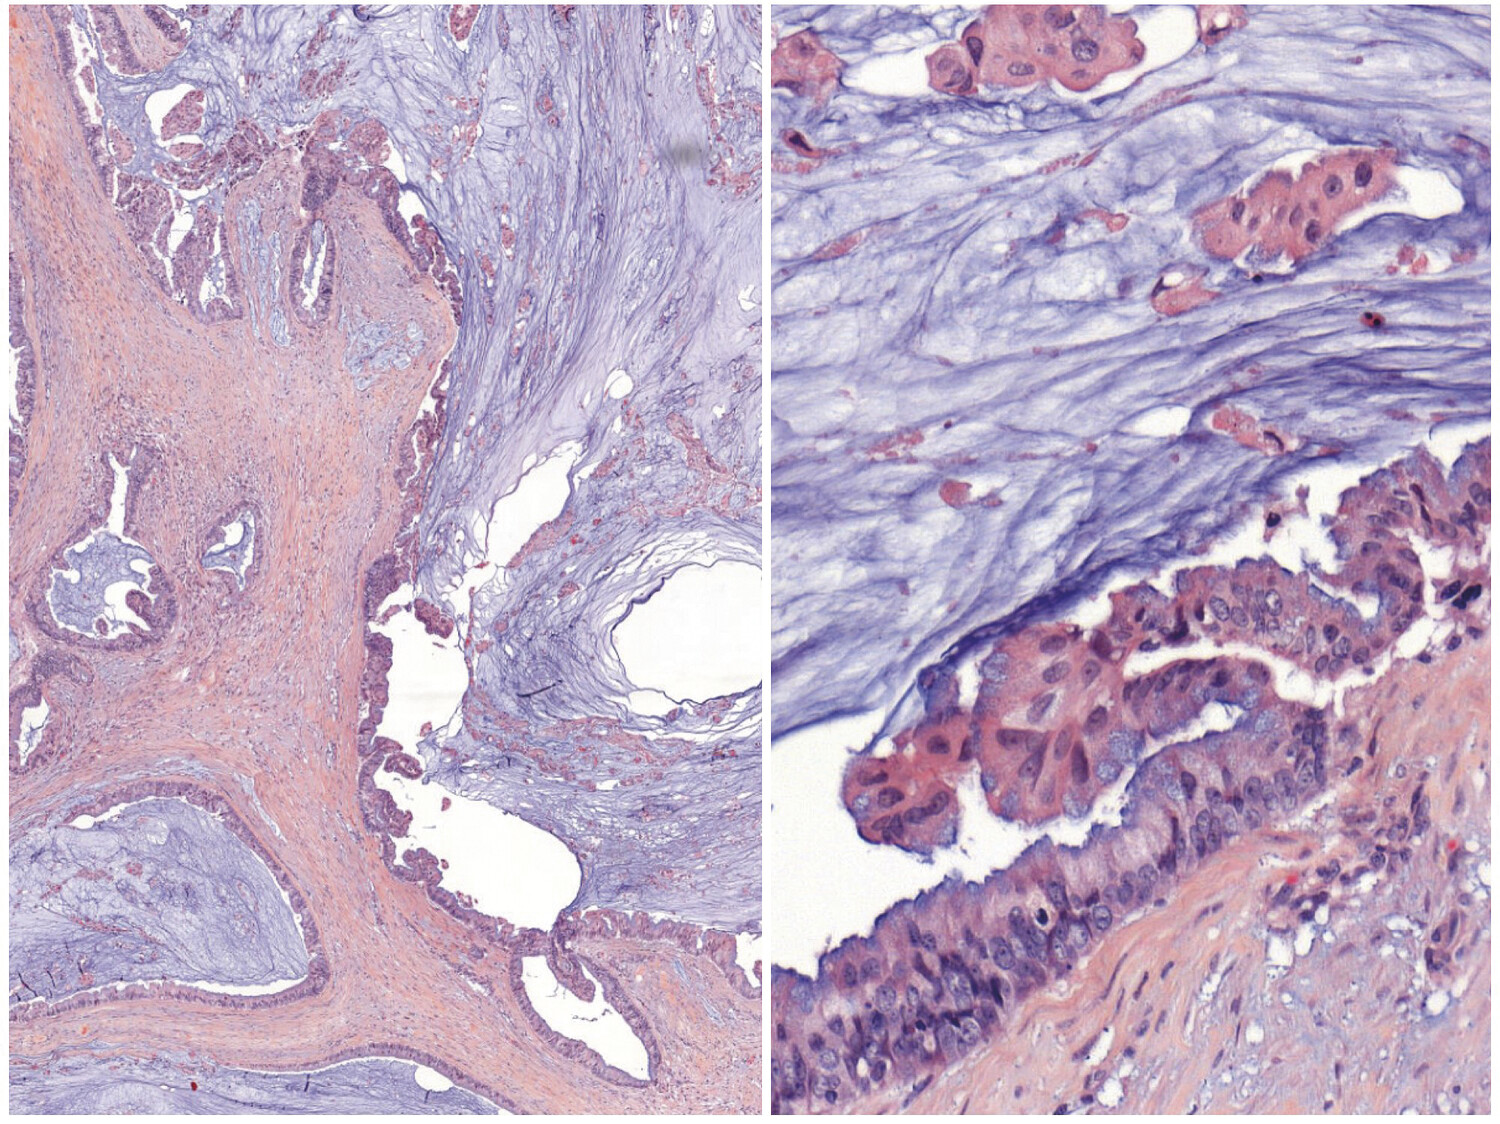 Cystadénocarcinome mucineux mammaire : le retour d’une tumeur rare du sein - Figure 1